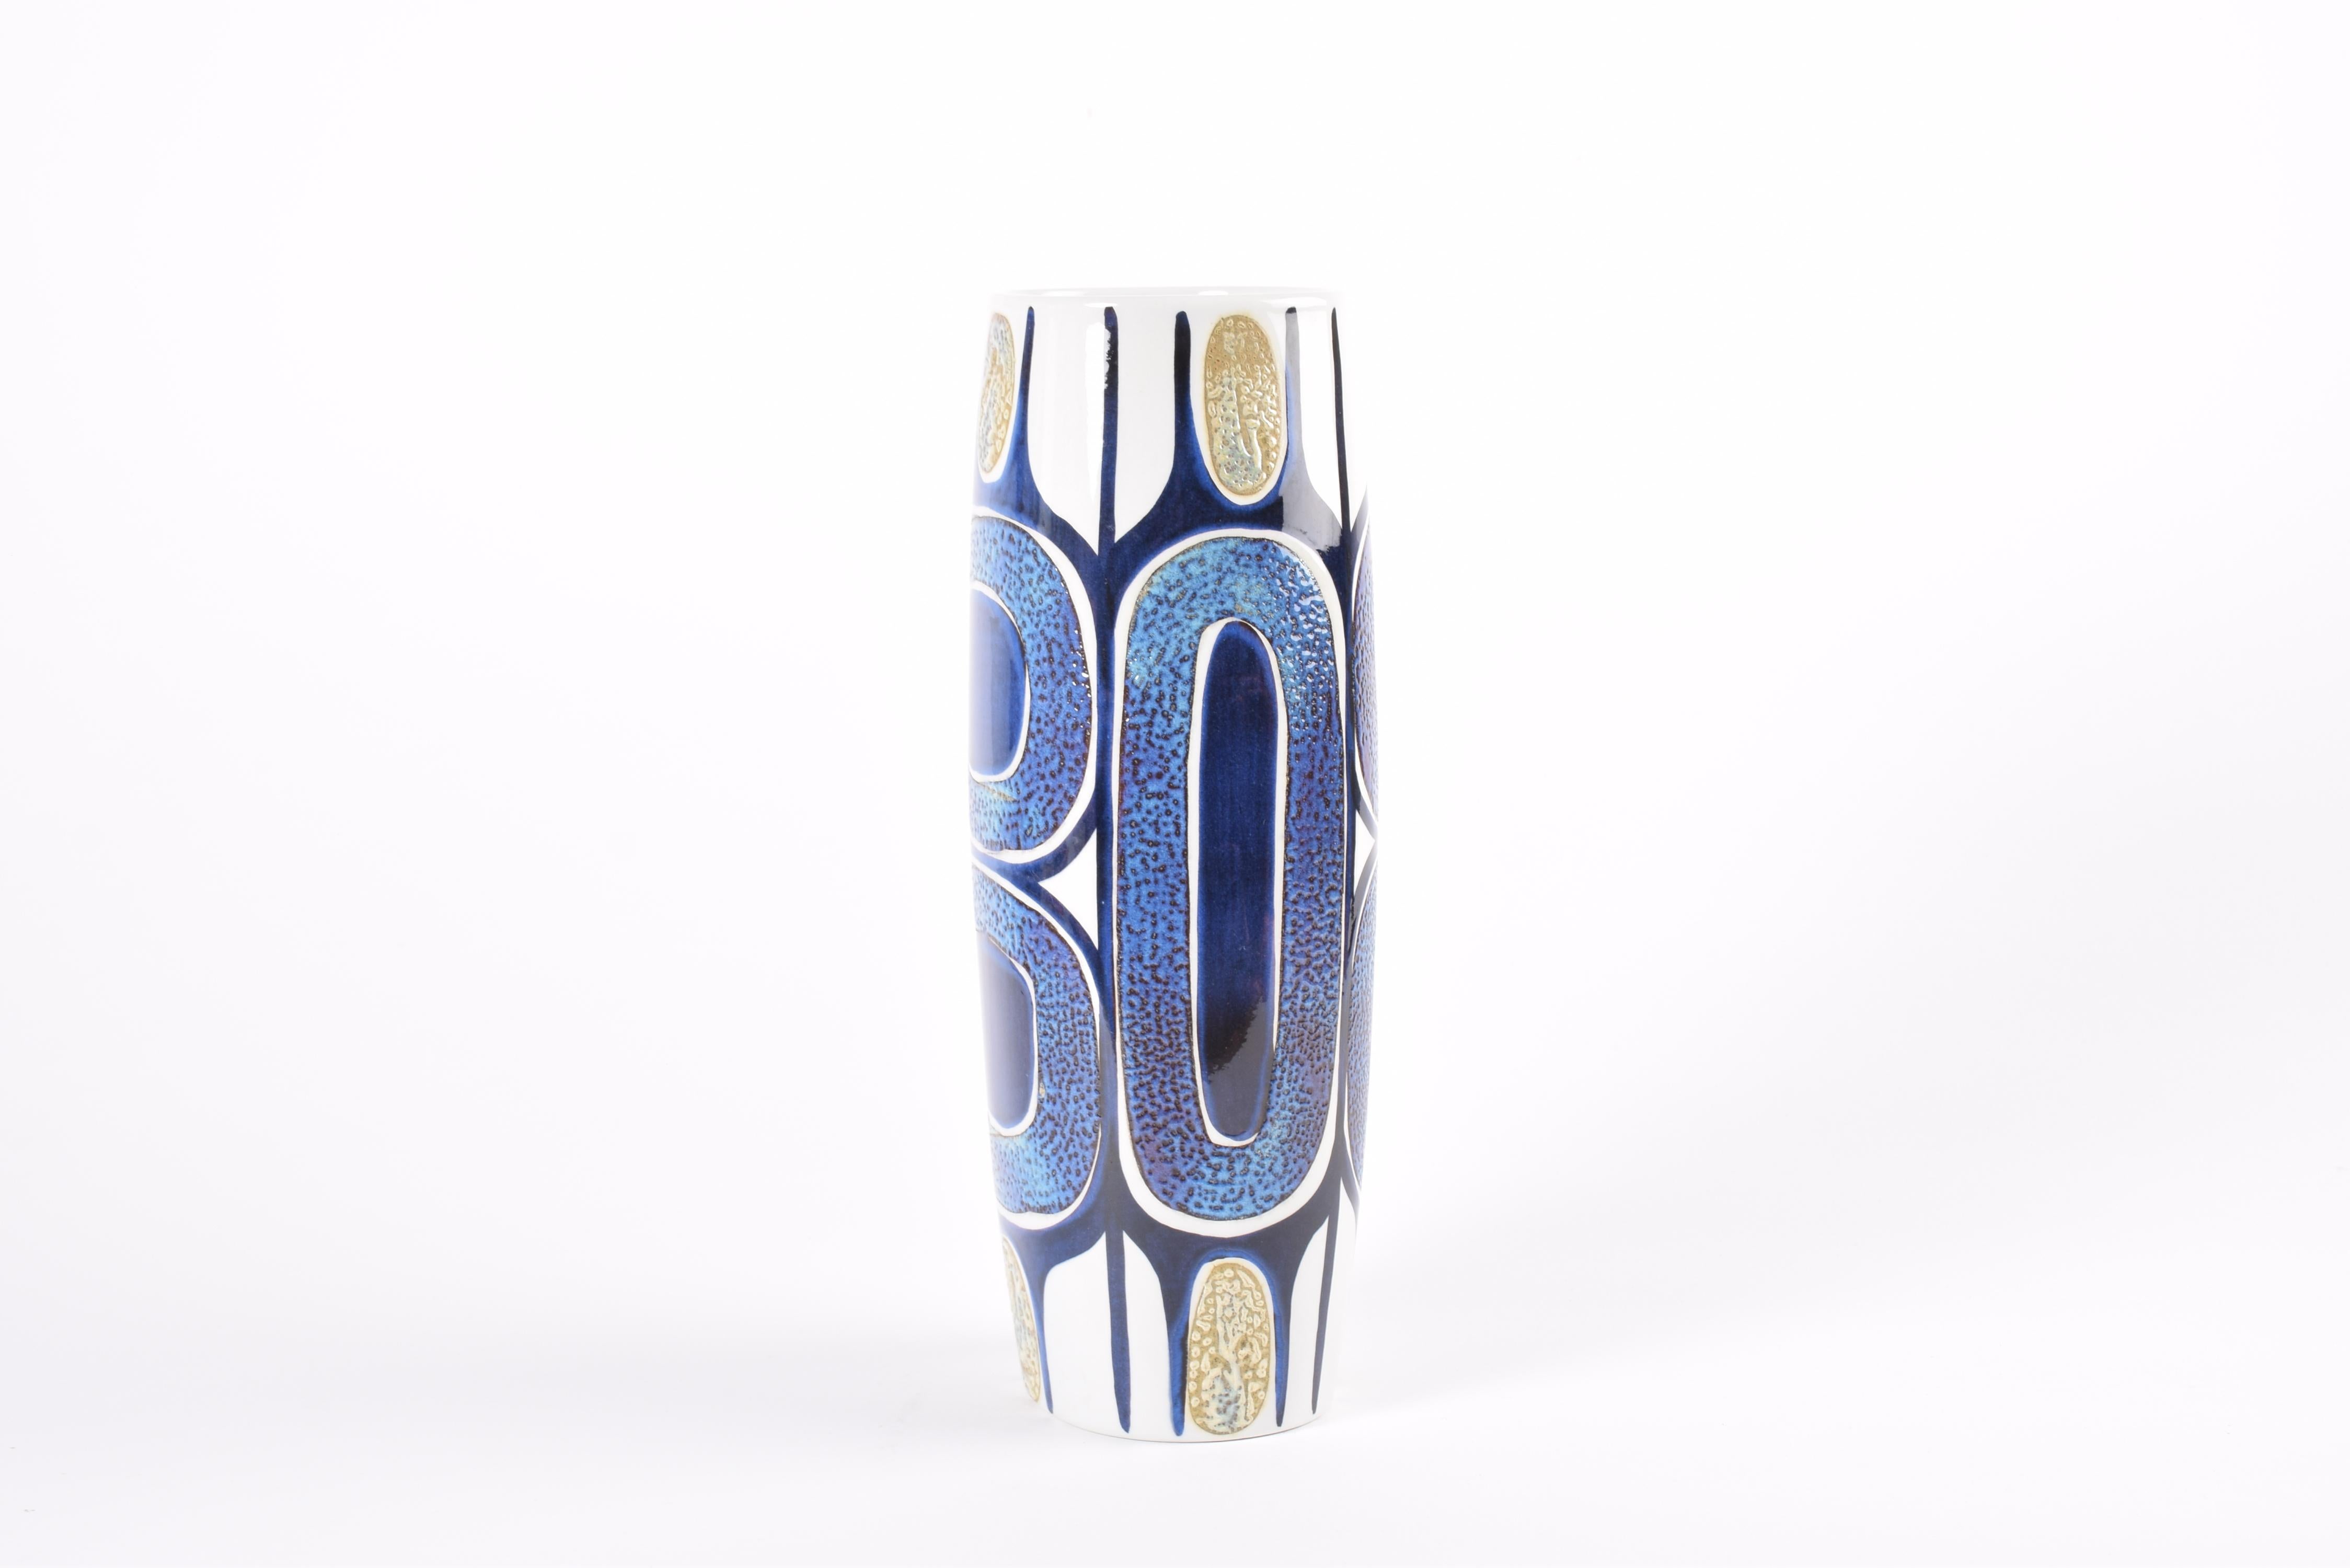 Glazed Royal Copenhagen Tenera Tall Vase Decor by Inge-Lise Koefoed Danish Modern 1960s For Sale